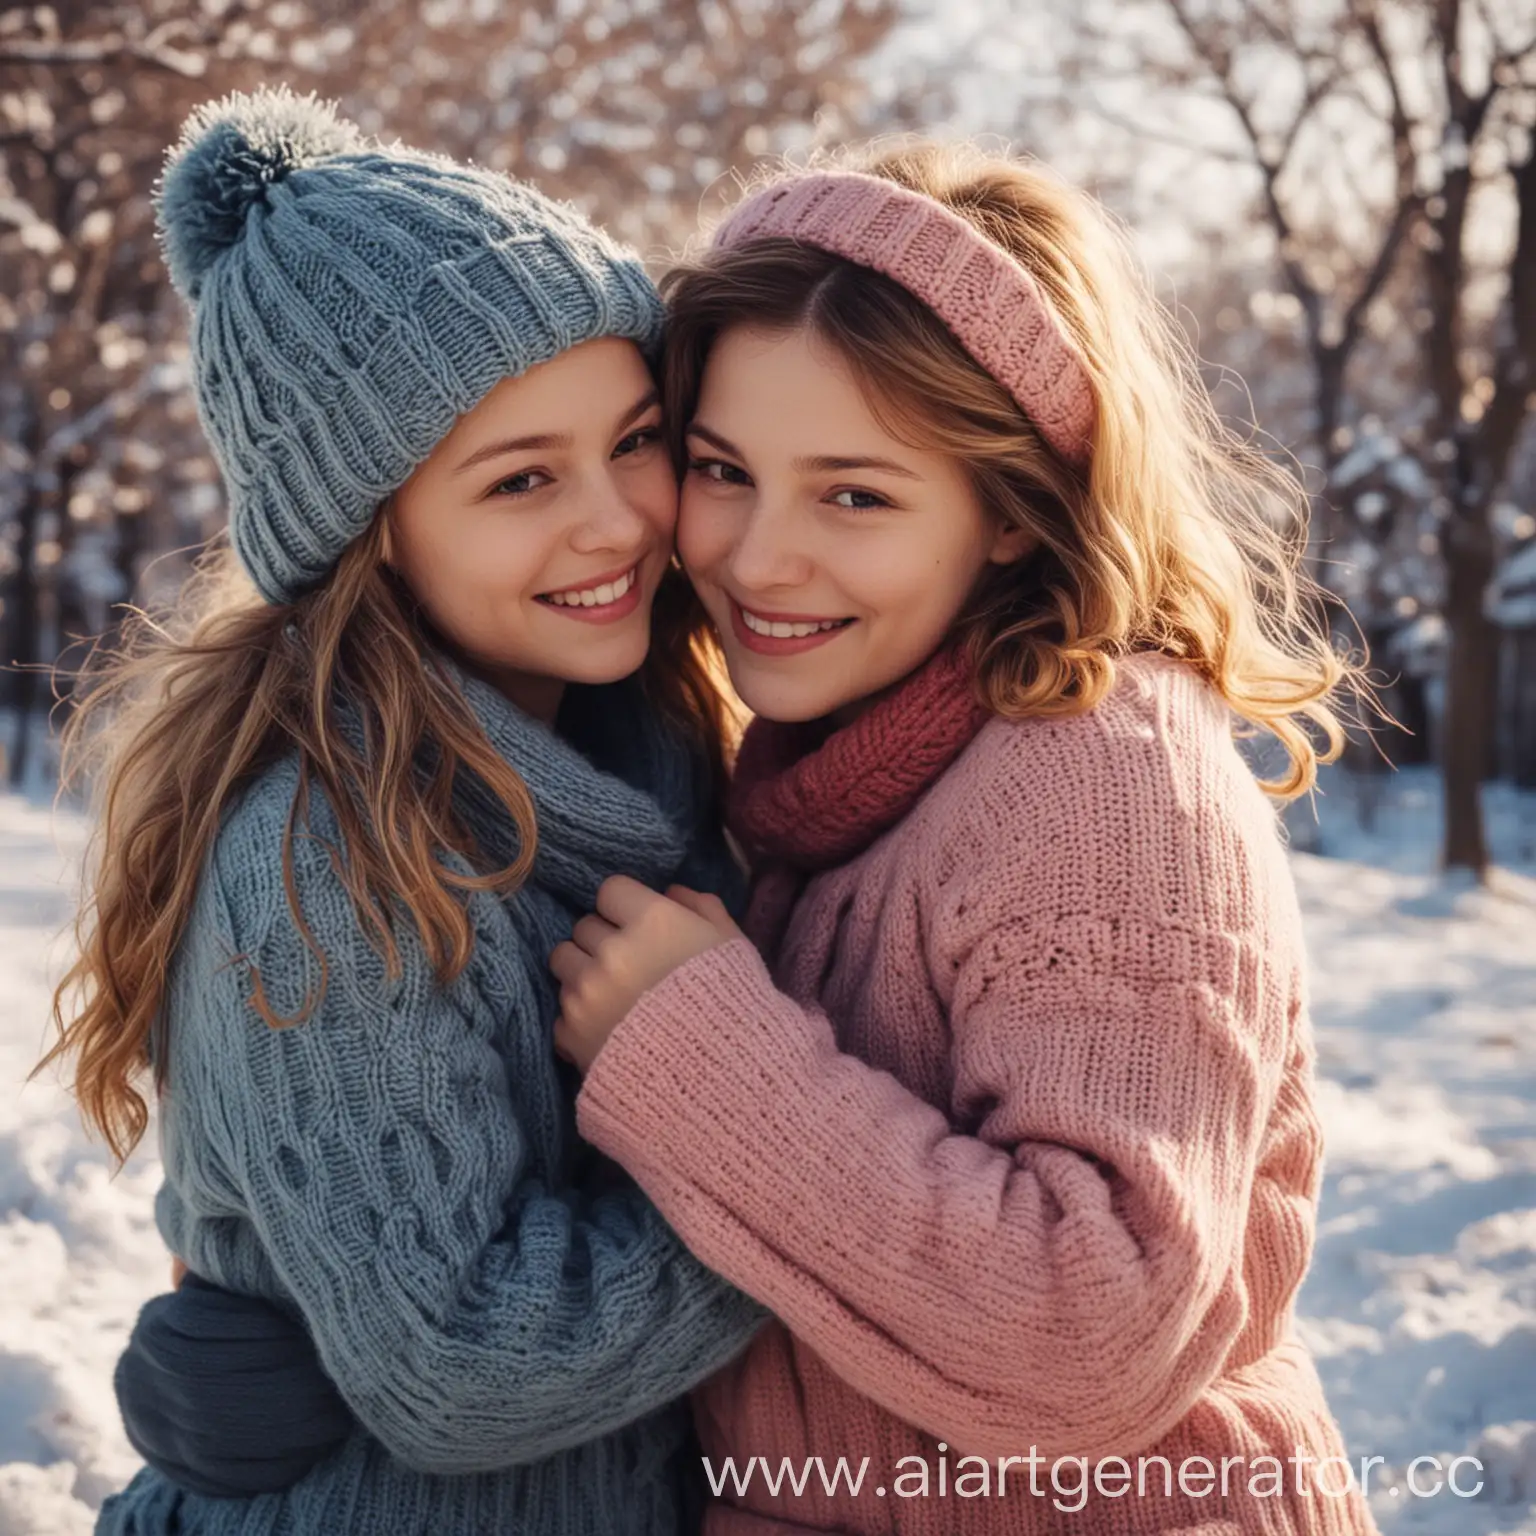 Февраль: Дружба
"В феврале дружба согревает сердца даже в самые холодные дни."